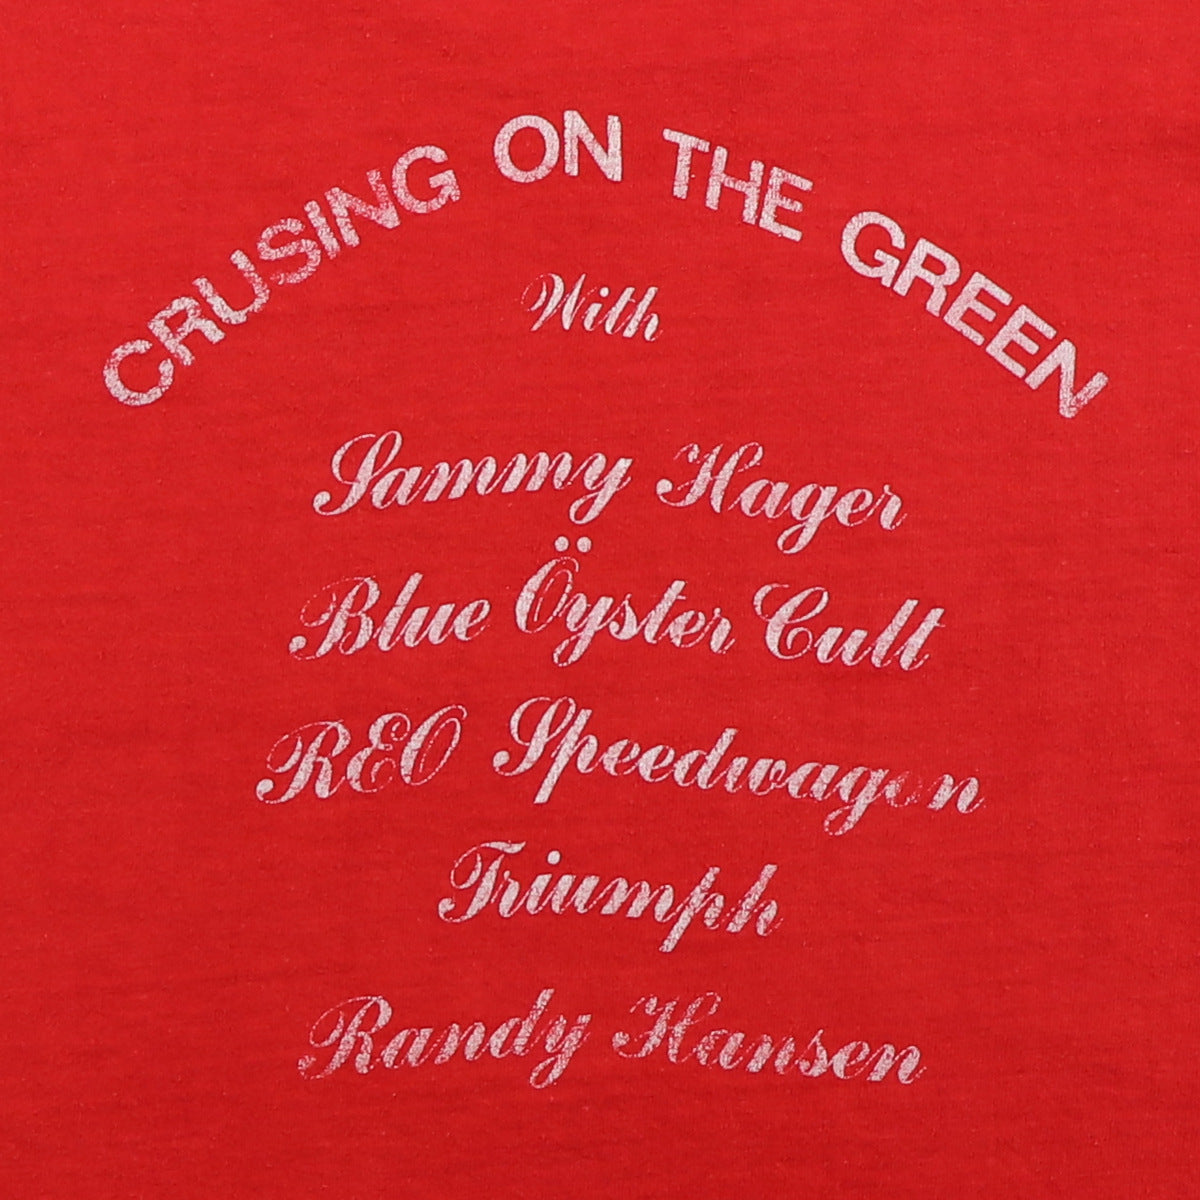 1980 Day On The Green Blue Oyster Cult Sammy Hagar Shirt